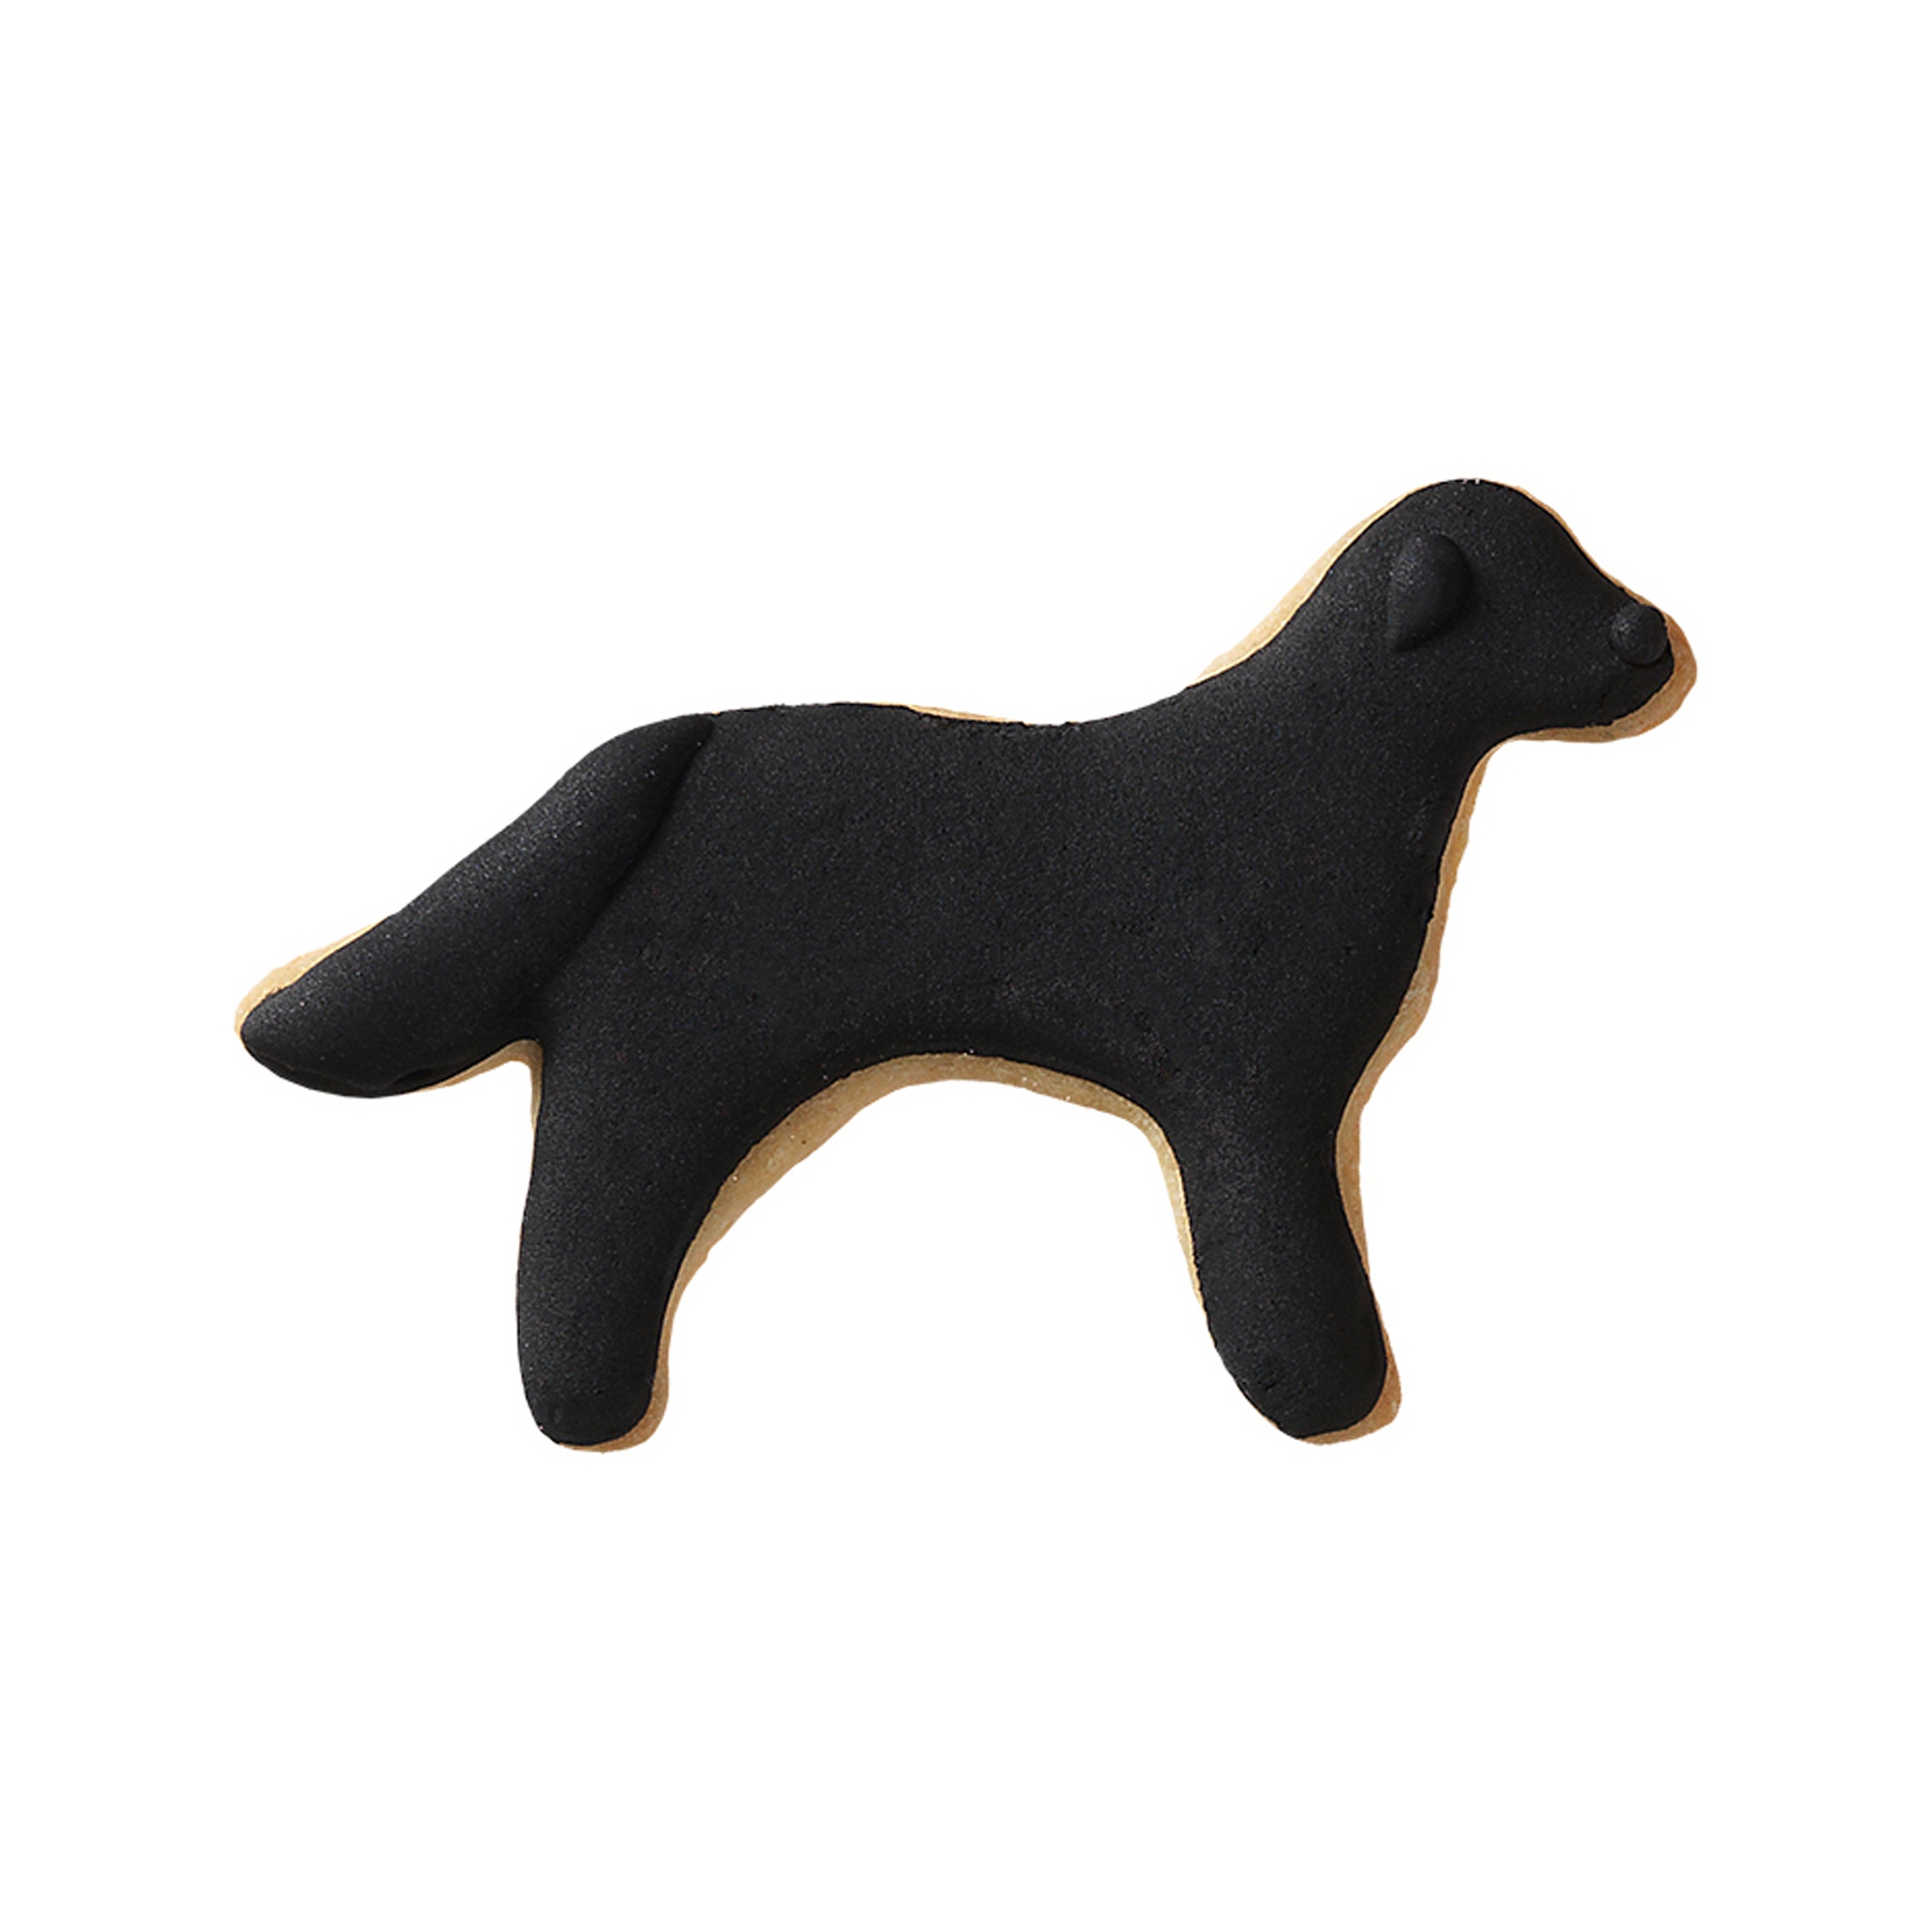 Birkmann - Cookie cutter - Dog standing 7.5 cm